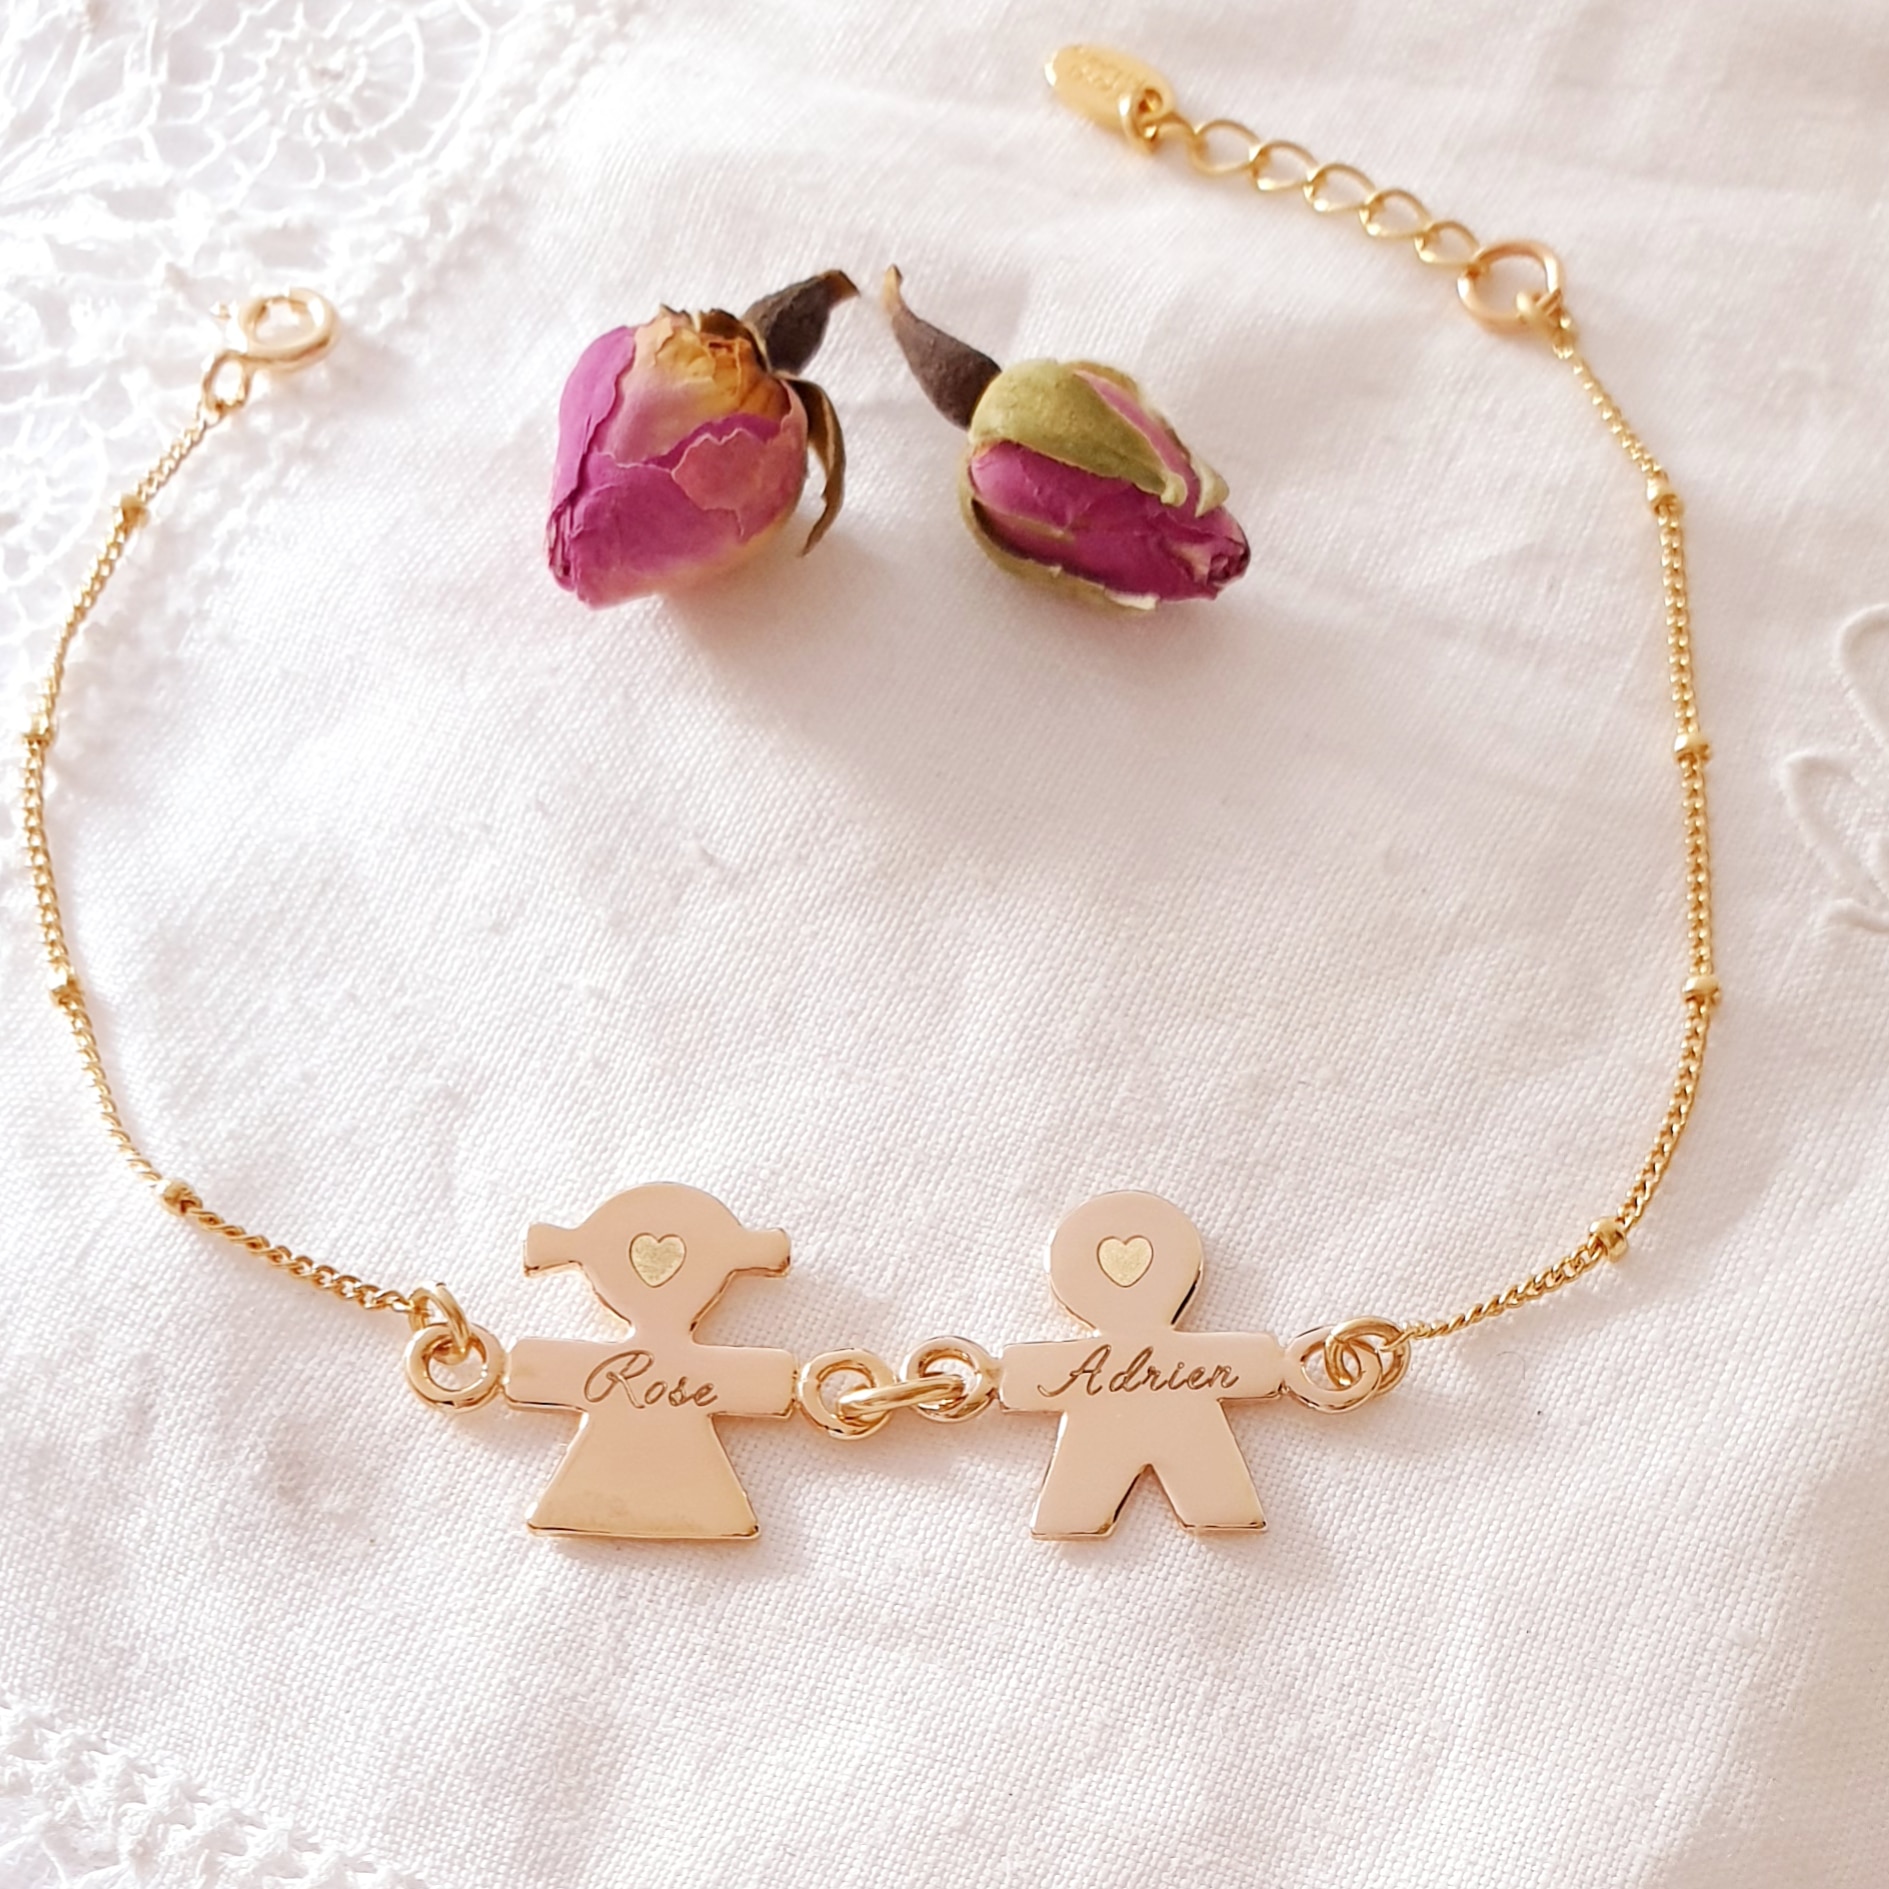 Bracelet chaine personnalisé - enfant - mot - prénom - padam padam - argent  - or - or rose